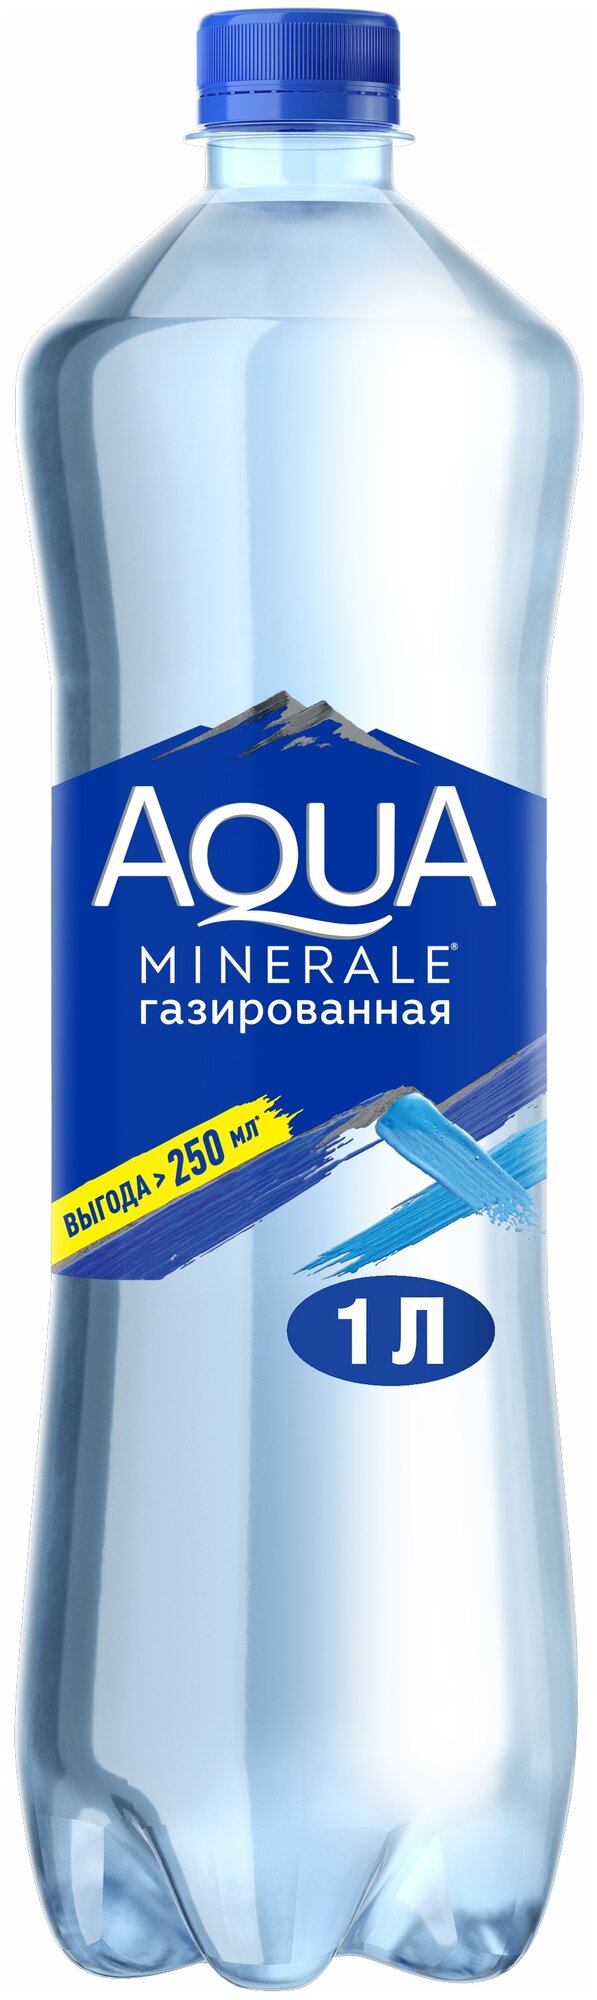 Вода Aqua Minerale Газированная 1 л (товар продается поштучно)